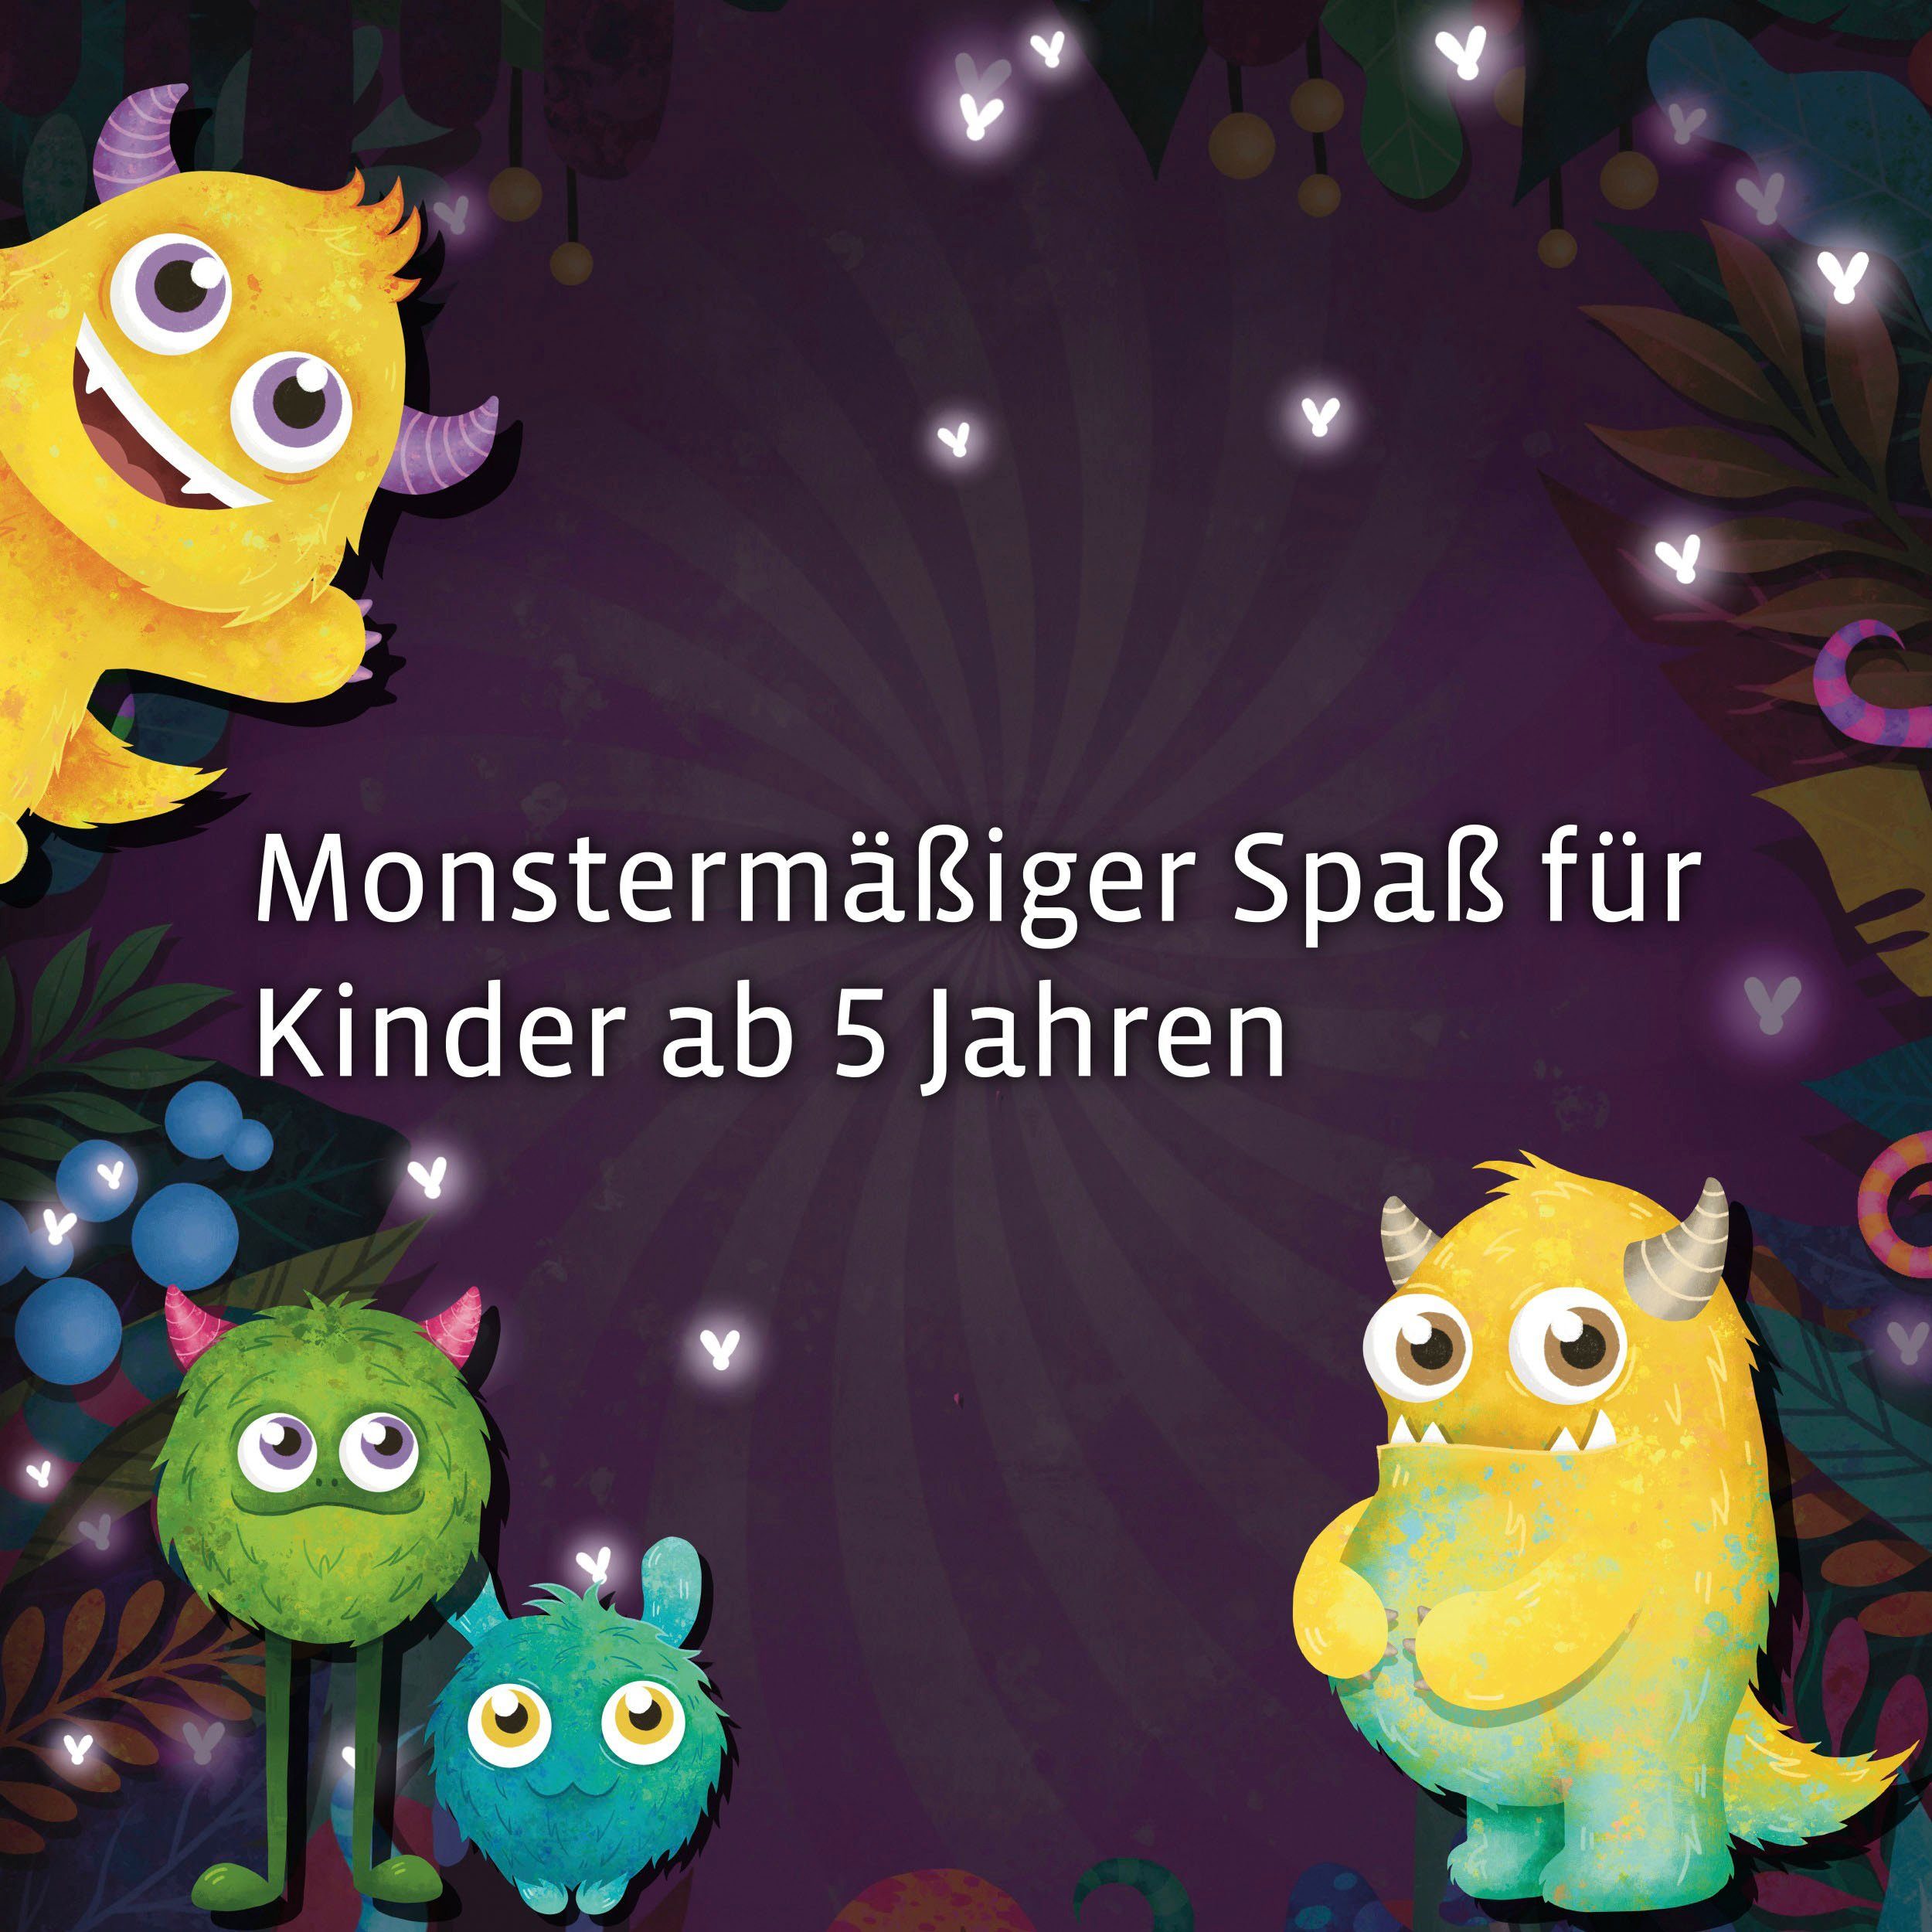 Made - Rätselspaß, Kinderspiel Germany Kids in Das Monstermäßiger EXIT® Spiel, Spiel Kosmos